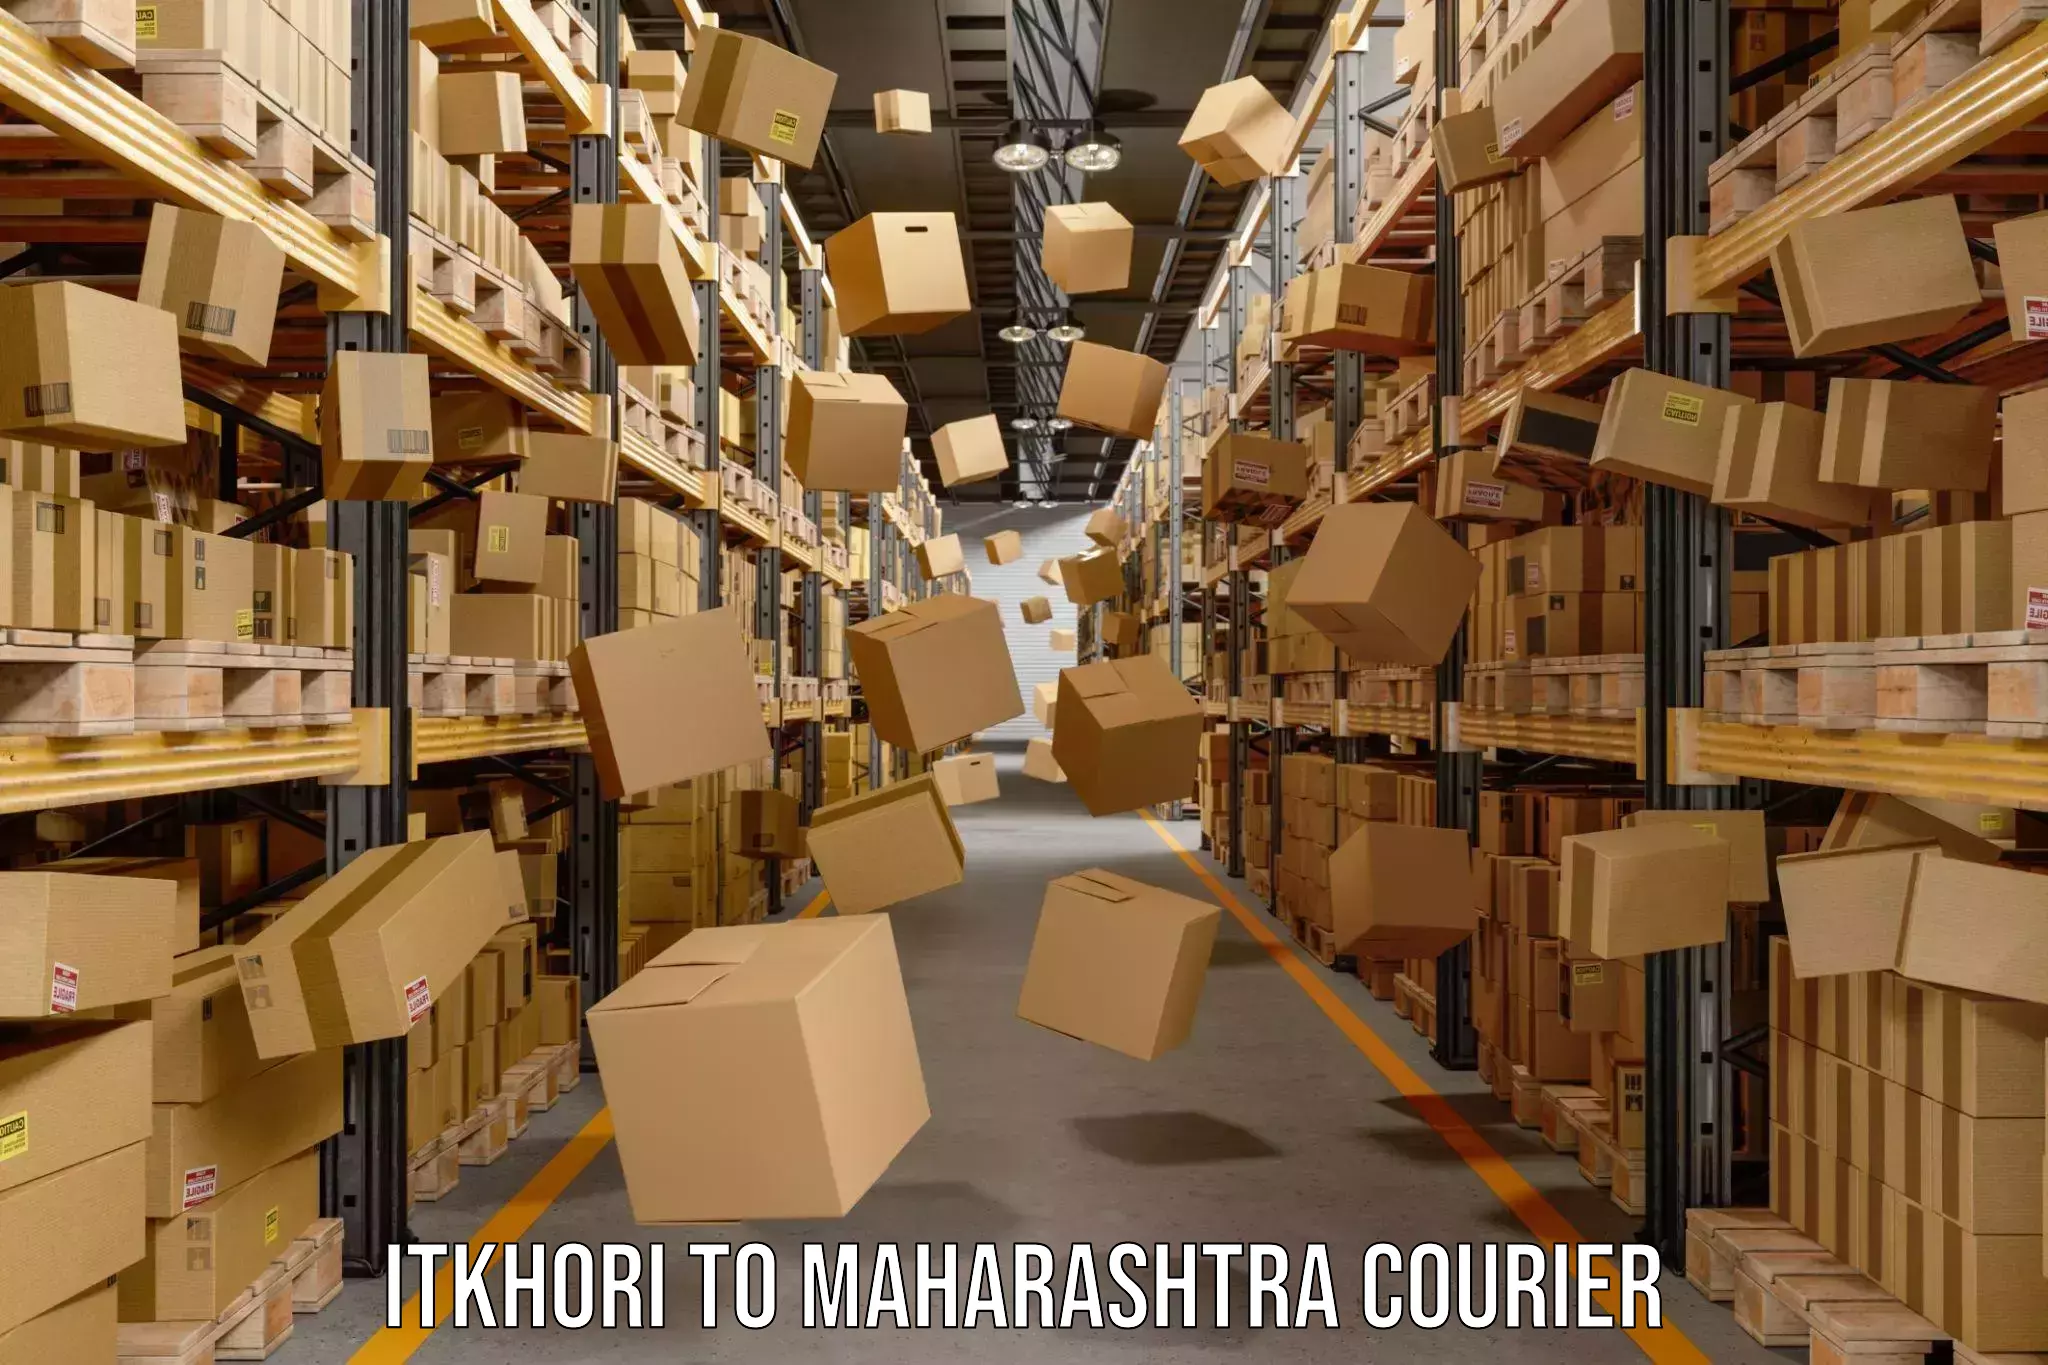 24-hour courier service Itkhori to Ambarnath